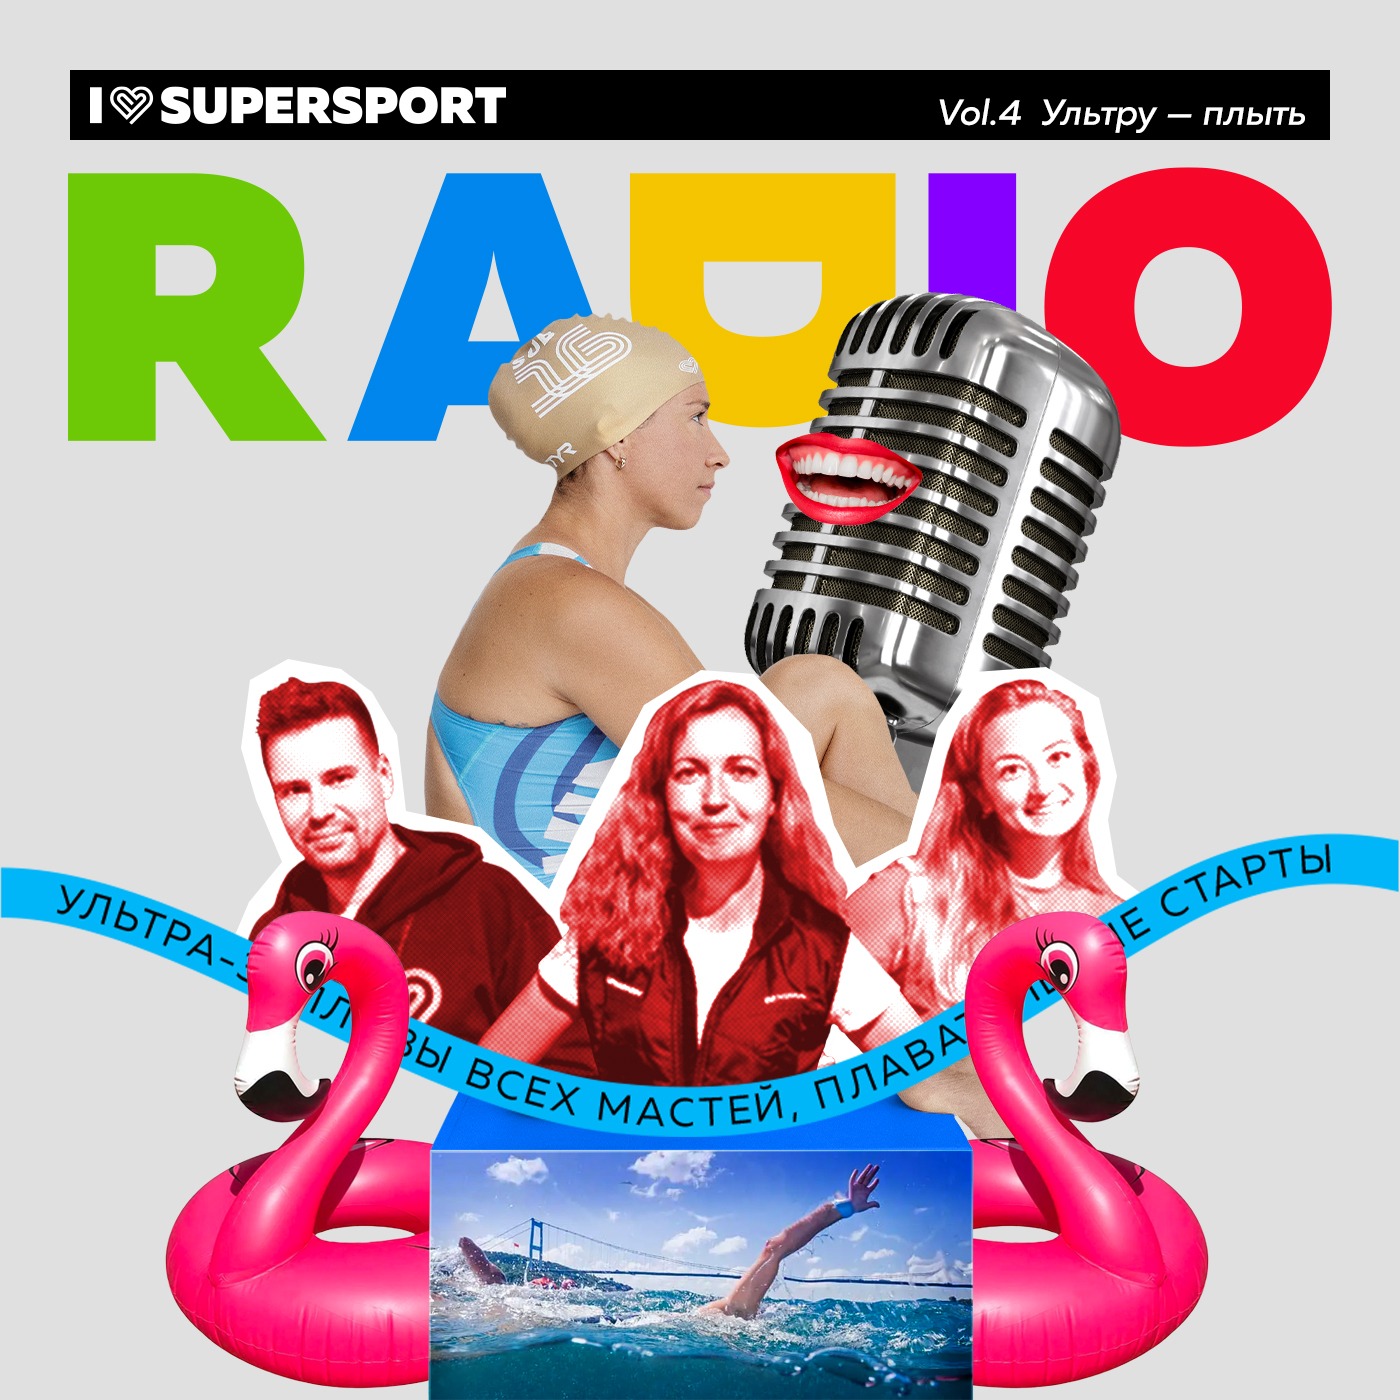 Радио I Love Supersport: the best of vol.4 - Ультру - плыть